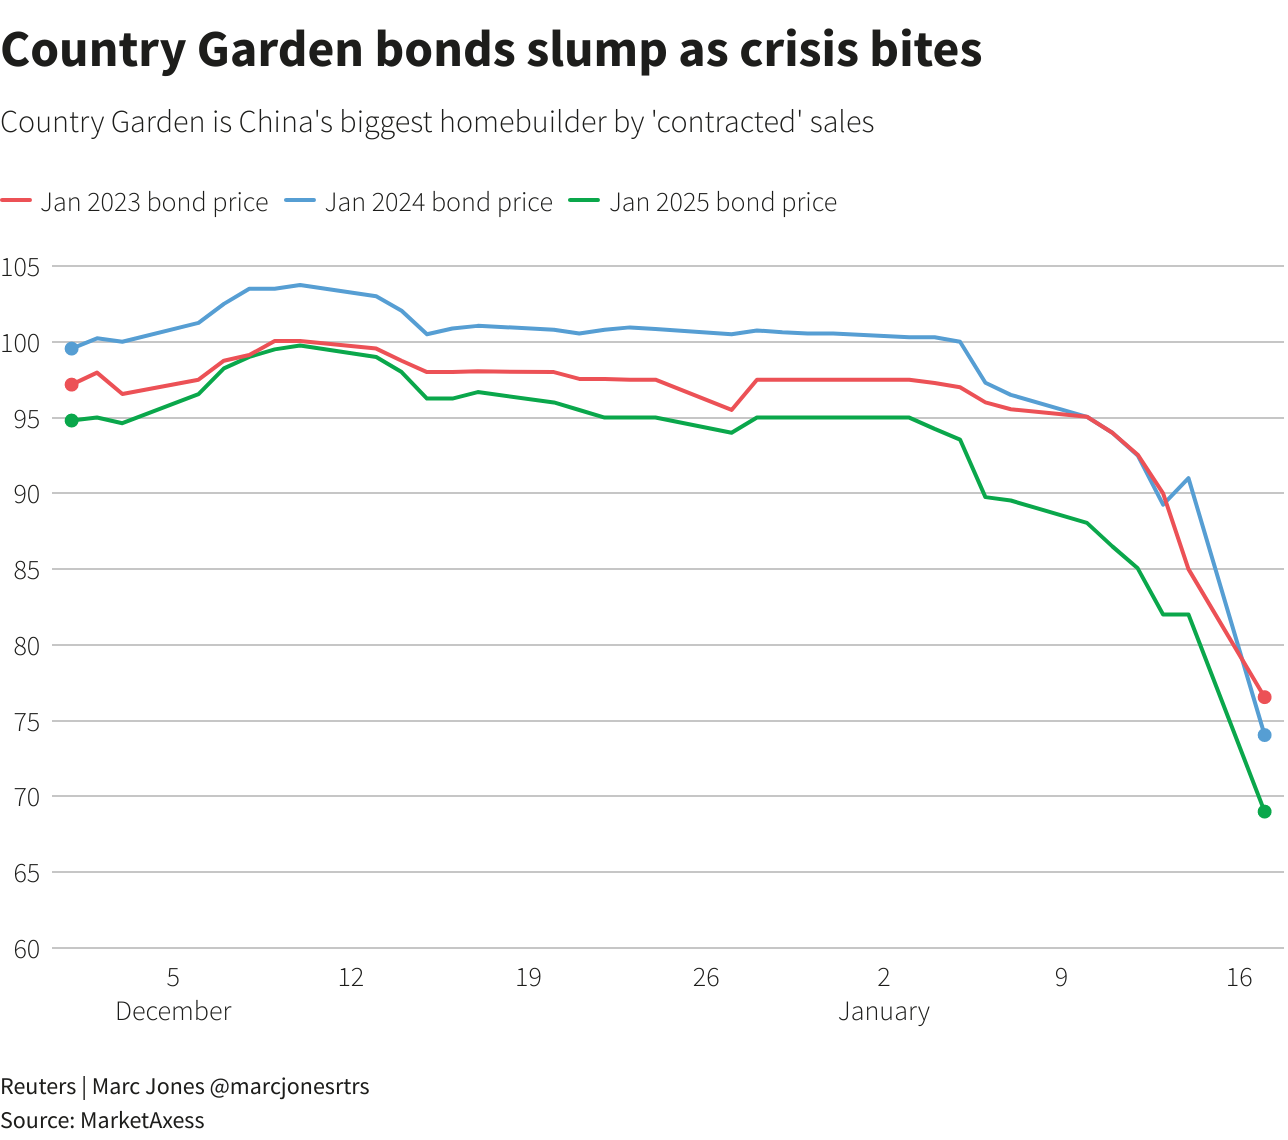 Country Garden bonds slump as crisis bites